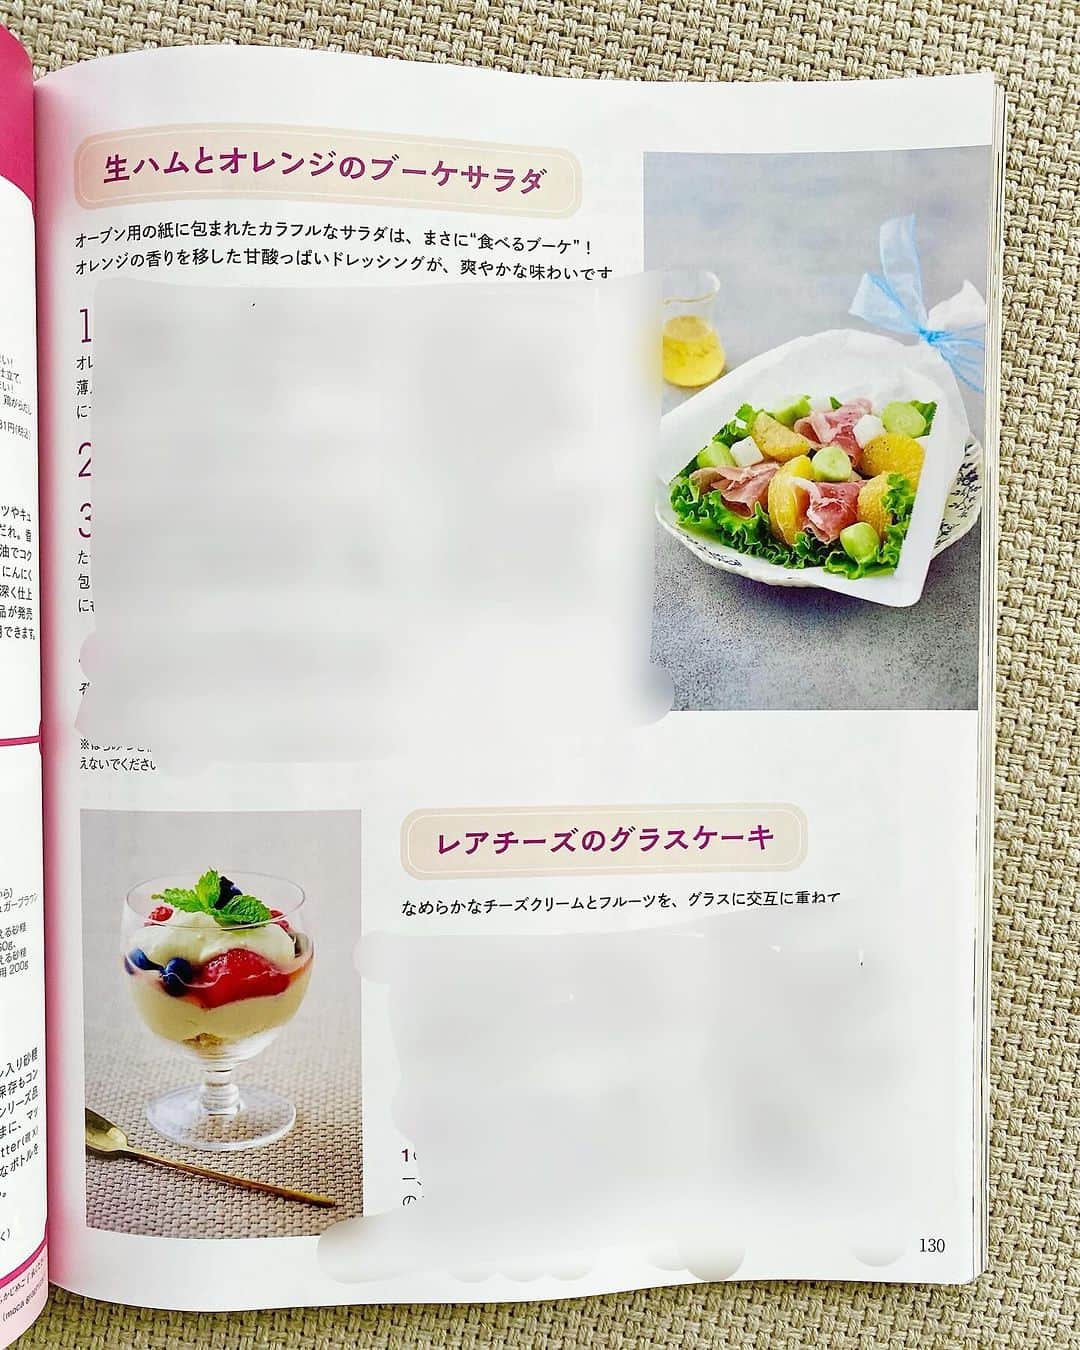 松本有美さんのインスタグラム写真 - (松本有美Instagram)「【お知らせ】 #NHKきょうの料理　 #ハレの日ごはん  ⁎⁎⁎⁎⁎⁎⁎⁎⁎⁎⁎⁎⁎⁎  こんにちは＾＾  かなりご無沙汰してます 覚えてらっしゃいますか？💦  久しぶりなのにレシピの更新でもなく 掲載誌のお知らせで失礼します💦 (掲載誌のお知らせ続きます)  NHKテキスト きょうの料理　12月号  が発売になりました＾＾  ひと足早く献本が手元に届き 早速拝見！  ページをめくる度 おいしそうな料理ばかりで憧れます  それに料理だけでなく スタイリストさんのスタイリングも素敵  そんな大先生方のレシピに混じって 今回もレシピを掲載していただいてます (毎回恐縮の極み)  今回は年末年始のおもてなしがテーマ  クリスマスや年末年始だけではなく ハレの日におすすめ 見た目以上に簡単にできる オススメのレシピになっています  盛り付けだけではなく それぞれの料理にも オシャレに見えつつも ちょっとした発想の転換で 美味しさがアップするレシピになっています＾＾  　 🌱 春巻きの皮を利用した 見た目のインパクトも抜群なえびフライ ザクザクの食感がやみつきになりますよ もはやえびフライではないですw  タルタルソースにもひと工夫✨  🌱しゃぶしゃぶが 　おもてなし料理になるには？  牛しゃぶを 柔らかくおいしく仕上げます 青じそとバターのソースがオススメです  🌱 にんじんのポタージュは フープロは使わずに 素材のおいしさを生かしながら チーズを使って味わいと食感 見た目にアクセントをつけました  🌱 サラダは特別感のあるスタイリングが ご家庭でも簡単にできて 普段の野菜をちょっと斬新な切り方にし オレンジをマリネしたドレッシングが 生ハムとの相性抜群！ 絶対試していただきたいです＾＾  🌱 デザートもひと工夫 冷凍いちごが実は2つのポイントに  どれもスタッフさんや 編集者さんカメラマンさんも これ！おいしい！と大絶賛してくれました  そして今回のスタイリングは 最近のお気に入り花柄のクロス  全体的に 落ち着いた大人可愛い雰囲気 気取り過ぎていないけど華やか そんなイメージしてみたんですが💦  ぜひぜひテキストと合わせて 番組もご覧下さいますと嬉しいです＾＾ 本には書ききれないポイントや 詳しい手順もご紹介します  NHKテキスト　 きょうの料理12月号  ⁎⁎⁎⁎⁎⁎⁎⁎⁎ いつもの食材で！ ハレの日ごはん 　(松本ゆうみ) ⁎⁎⁎⁎⁎⁎⁎⁎⁎  ［番組放送予定日］  本放送(総合) 【生放送予定】 12月22(金) 0時20分〜0時43分  　〜クリスマスにも間に合います〜  再放送(Eテレ) 【年内最後のきょうの料理】 12月27日(水) 午後9時〜9時23分  再放送(Eテレ) 【来年になります】 1月８日(月)  午前11時30分〜11時53分  ※国会中継や緊急ニュースが飛び込んできた場合は変更になる場合がございます  ※きょうの料理、Ｘ(旧Twitter)、LINE、みんなのきょうの料理(レシピ掲載)、ホームページもぜひチェックしてみてくださいね  　🌸Amazon総合ランキング５位🌸 　　　楽天ブックス料理本　1位 　　　　🌱重版3刷目🌱  　　📖\\❋レシピ本発売中//📖 　——————————————— 　　　　　   ゆーママの簡単！　 　　　　節約レンチンごはん  ———————————————— 　　ほぼコンテナに入れるだけ！ 　　　　(冷凍つくりおき)  　　　　🌸感謝15万部突破🌸 　———————————————— 　📖小分け冷凍おかずを詰めるだけ 　　　　　　毎朝ラクする 　　　冷凍つくりおきのお弁当 　————————————————  その他レシピ本多数発売中 (累計75万部突破)  ☑️Amazon、楽天ブックスのリンクは 　　　　　ハイライトから✈️  ☕️threads はじめてみました☕️ ————————————————  普段のごはんやスイーツ、日常などいろいろ写真と共にリアル日常を綴ってます  https://www.threads.net/@yu_mama_cafe ※ハイライトからお気軽に♪＾＾  ⁎⁎✻⁎⁎⁎❅⁎⁎⁎✻⁎⁎ 🍩ドーナツ専門店🍩 　　　　＆ 　お取り寄せスイーツ ————————————  🍀公式インスタグラム🍀  @one_for_two_yuumama   🍀オンラインショップ🍀  https://www.one-for-two.com  ⚠️レシピ、画像の無断転載は禁止しております。 ____________________________________ #料理研究家#松本ゆうみ#ゆーママレシピ#フーディーテーブル#時短レシピ#かんたんレシピ#節約レシピ＃簡単レシピ#おもてなしレシピ#ハレの日ごはん#クリスマスメニュー#おもてなしごはん#きょうの料理#ポタージュレシピ」11月21日 12時35分 - yu_mama_cafe